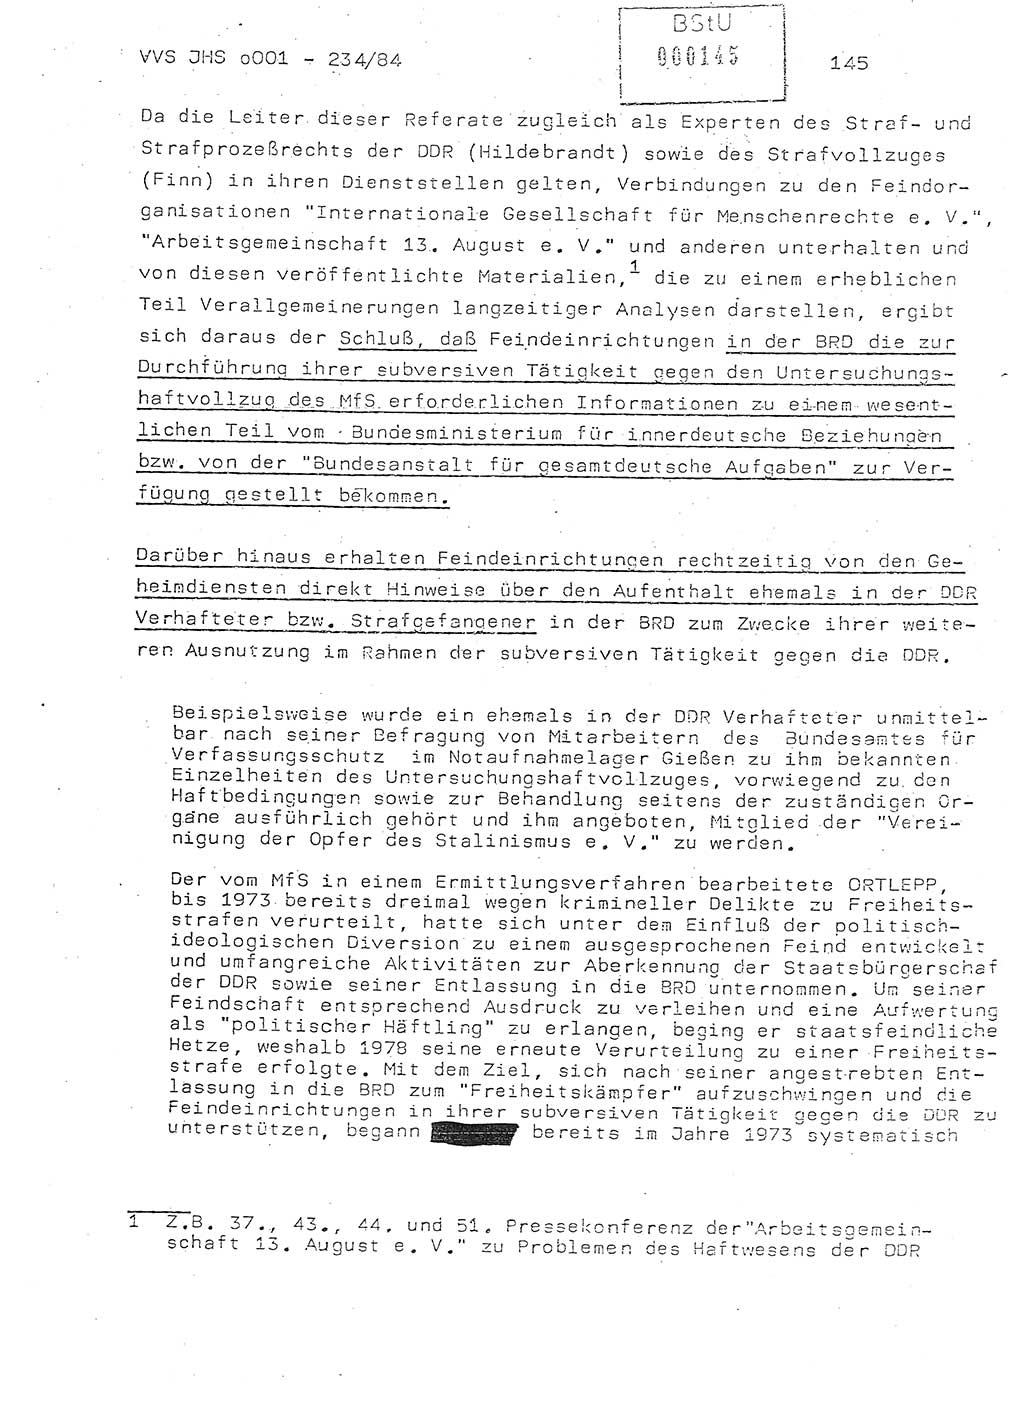 Dissertation Oberst Siegfried Rataizick (Abt. ⅩⅣ), Oberstleutnant Volkmar Heinz (Abt. ⅩⅣ), Oberstleutnant Werner Stein (HA Ⅸ), Hauptmann Heinz Conrad (JHS), Ministerium für Staatssicherheit (MfS) [Deutsche Demokratische Republik (DDR)], Juristische Hochschule (JHS), Vertrauliche Verschlußsache (VVS) o001-234/84, Potsdam 1984, Seite 145 (Diss. MfS DDR JHS VVS o001-234/84 1984, S. 145)